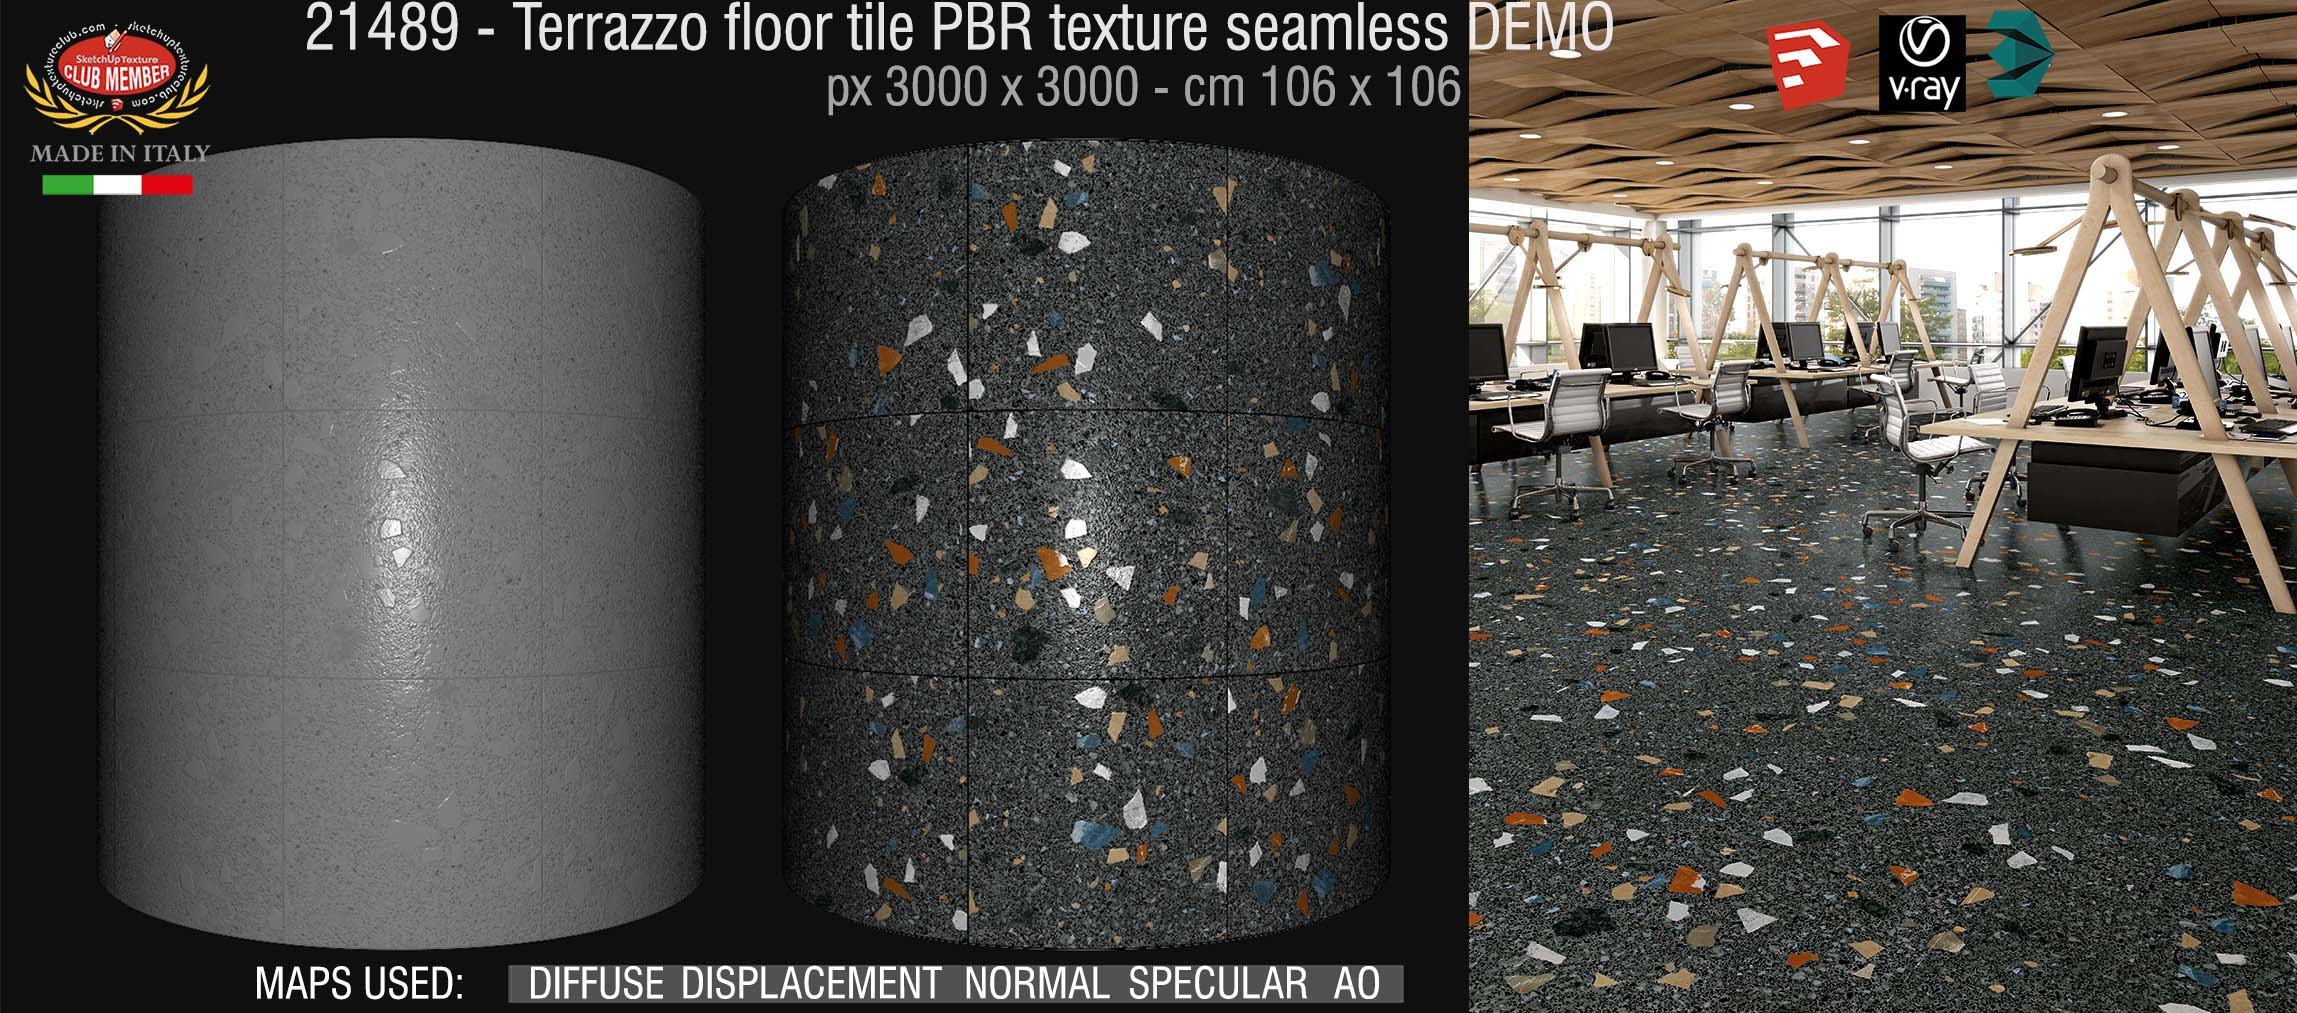 21489 terrazzo floor tile PBR texture seamless DEMO